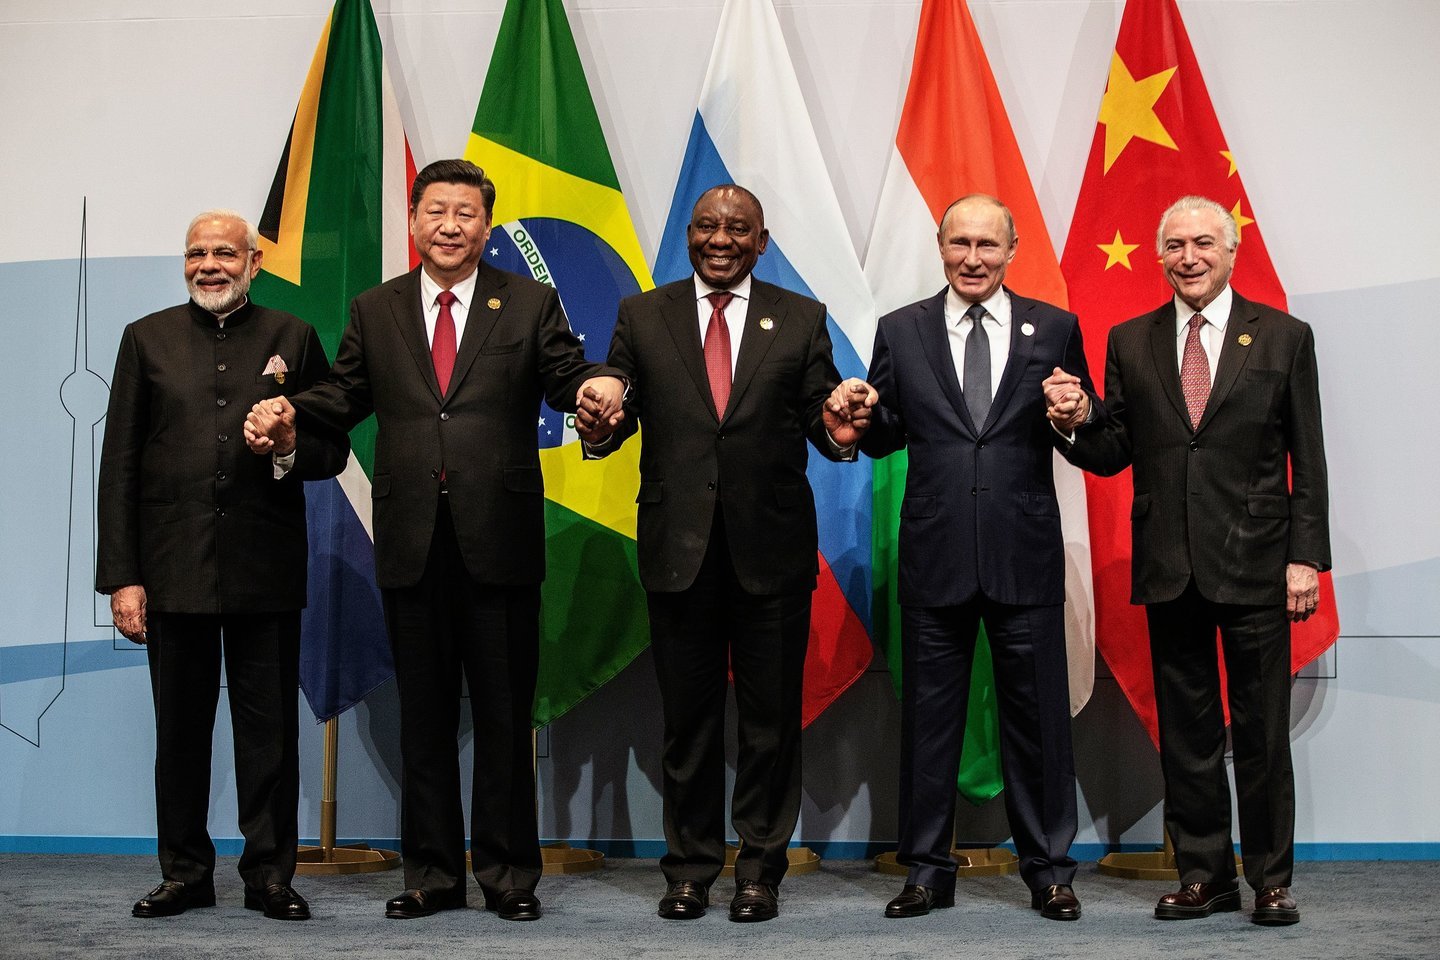  Penkių kylančių pasaulio ekonomikų – BRICS valstybių – lyderiai susirinko Pietų Afrikos Respublikoje (PAR) į metinį viršūnių susitikimą, kuriame kritikuoja Jungtines Valstijas dėl muitų užsienio prekėms eskalavimo.<br> AFP/Scanpix nuotr.